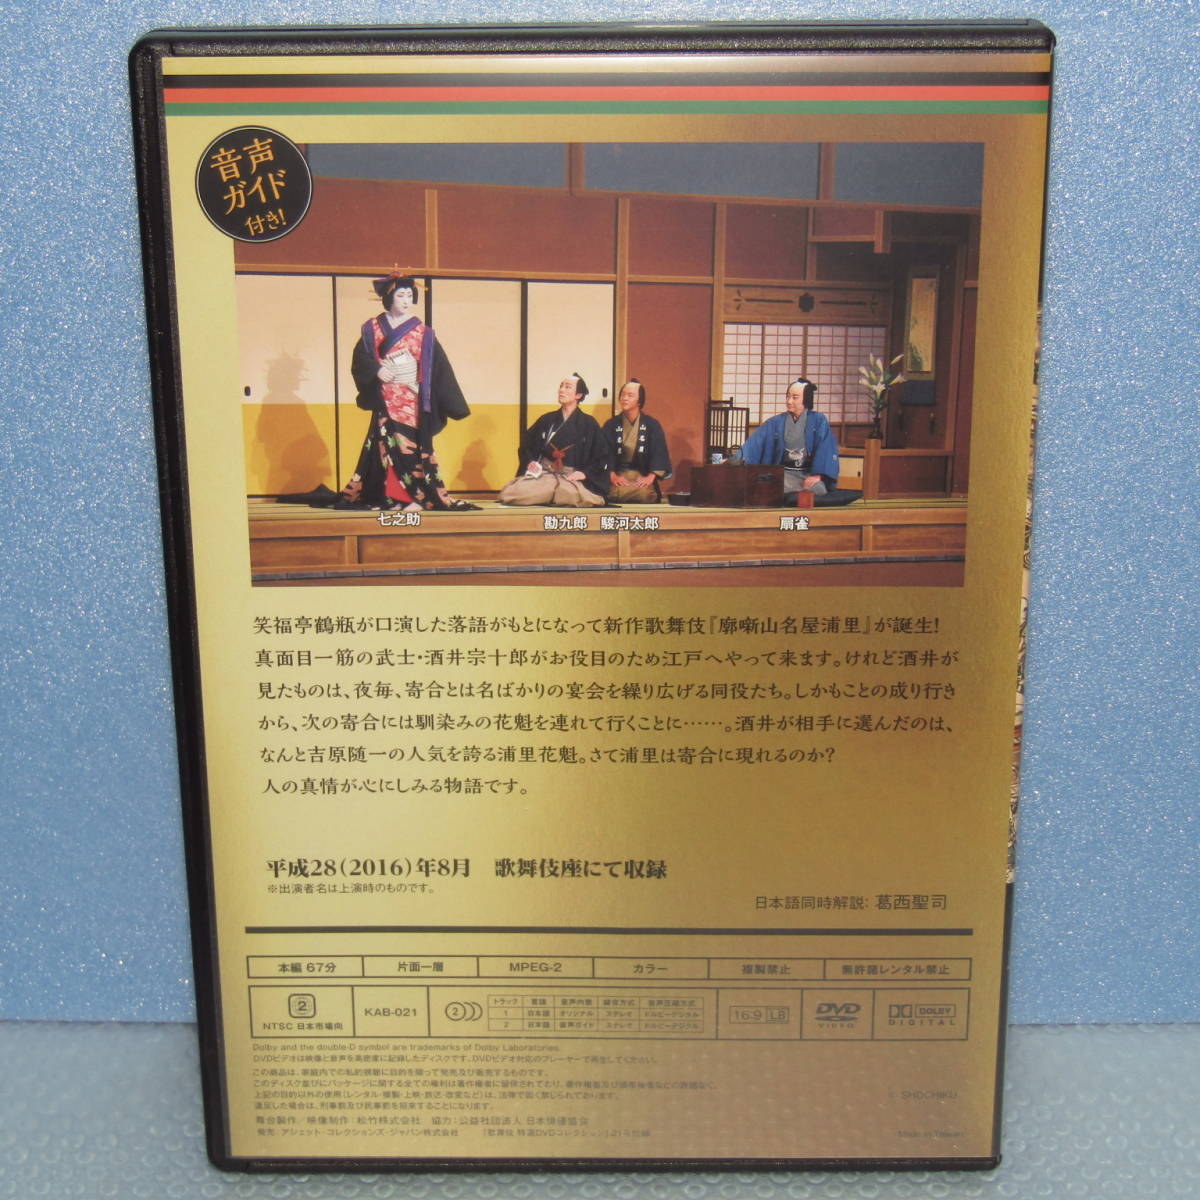 最新デザインの DVD「歌舞伎 特選DVDコレクション アシェット」 中村